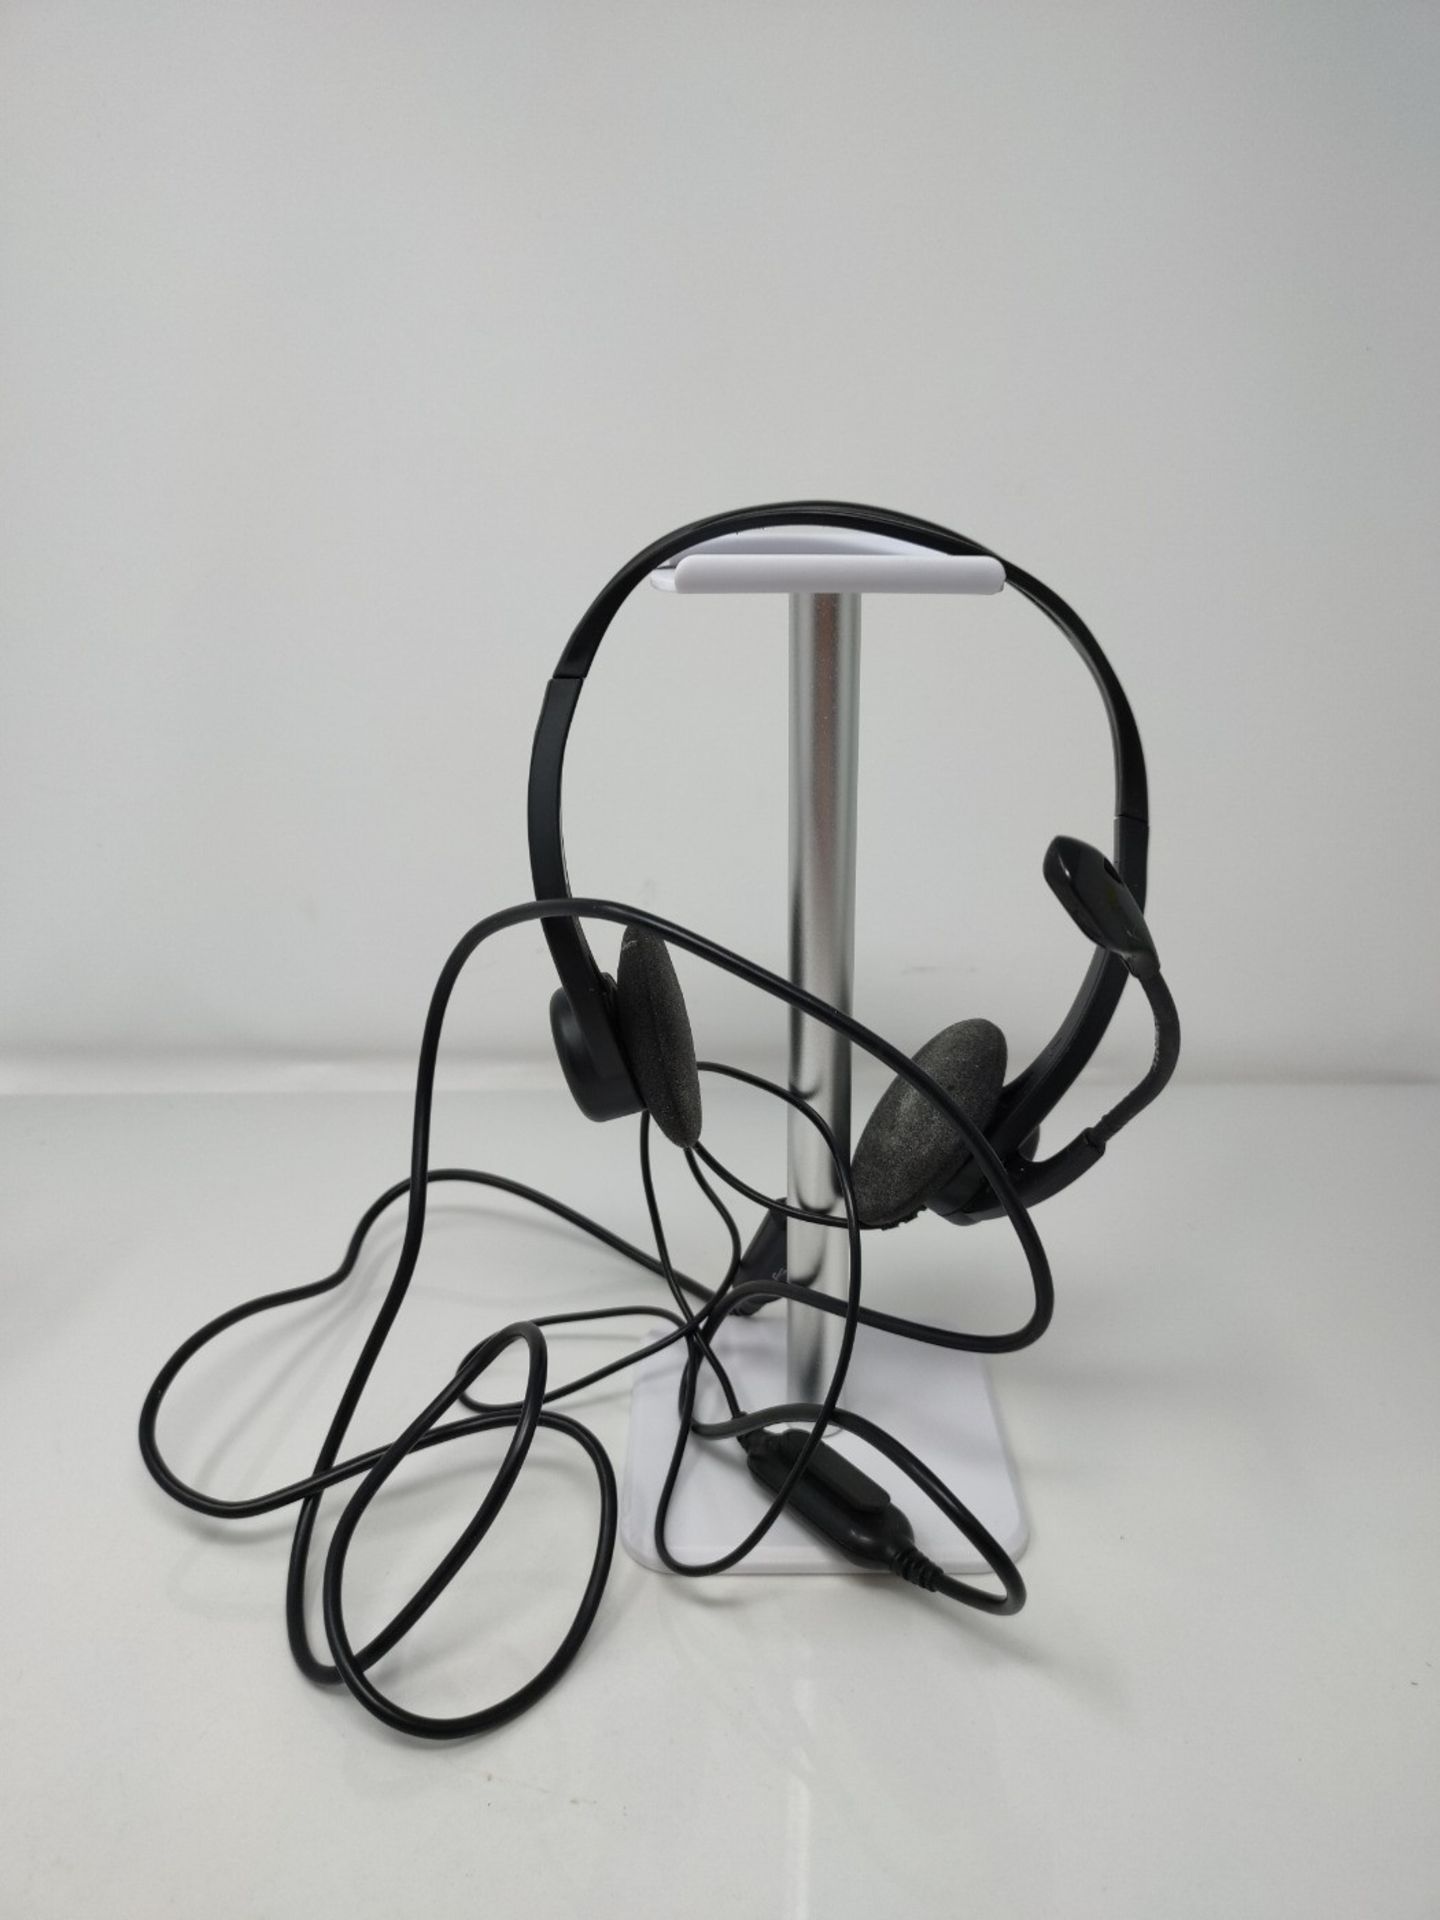 Logitech 960 Kopfhörer mit Mikrofon, Stereo-Headset, Verstellbares Mikrofon mit Rausc - Bild 2 aus 2